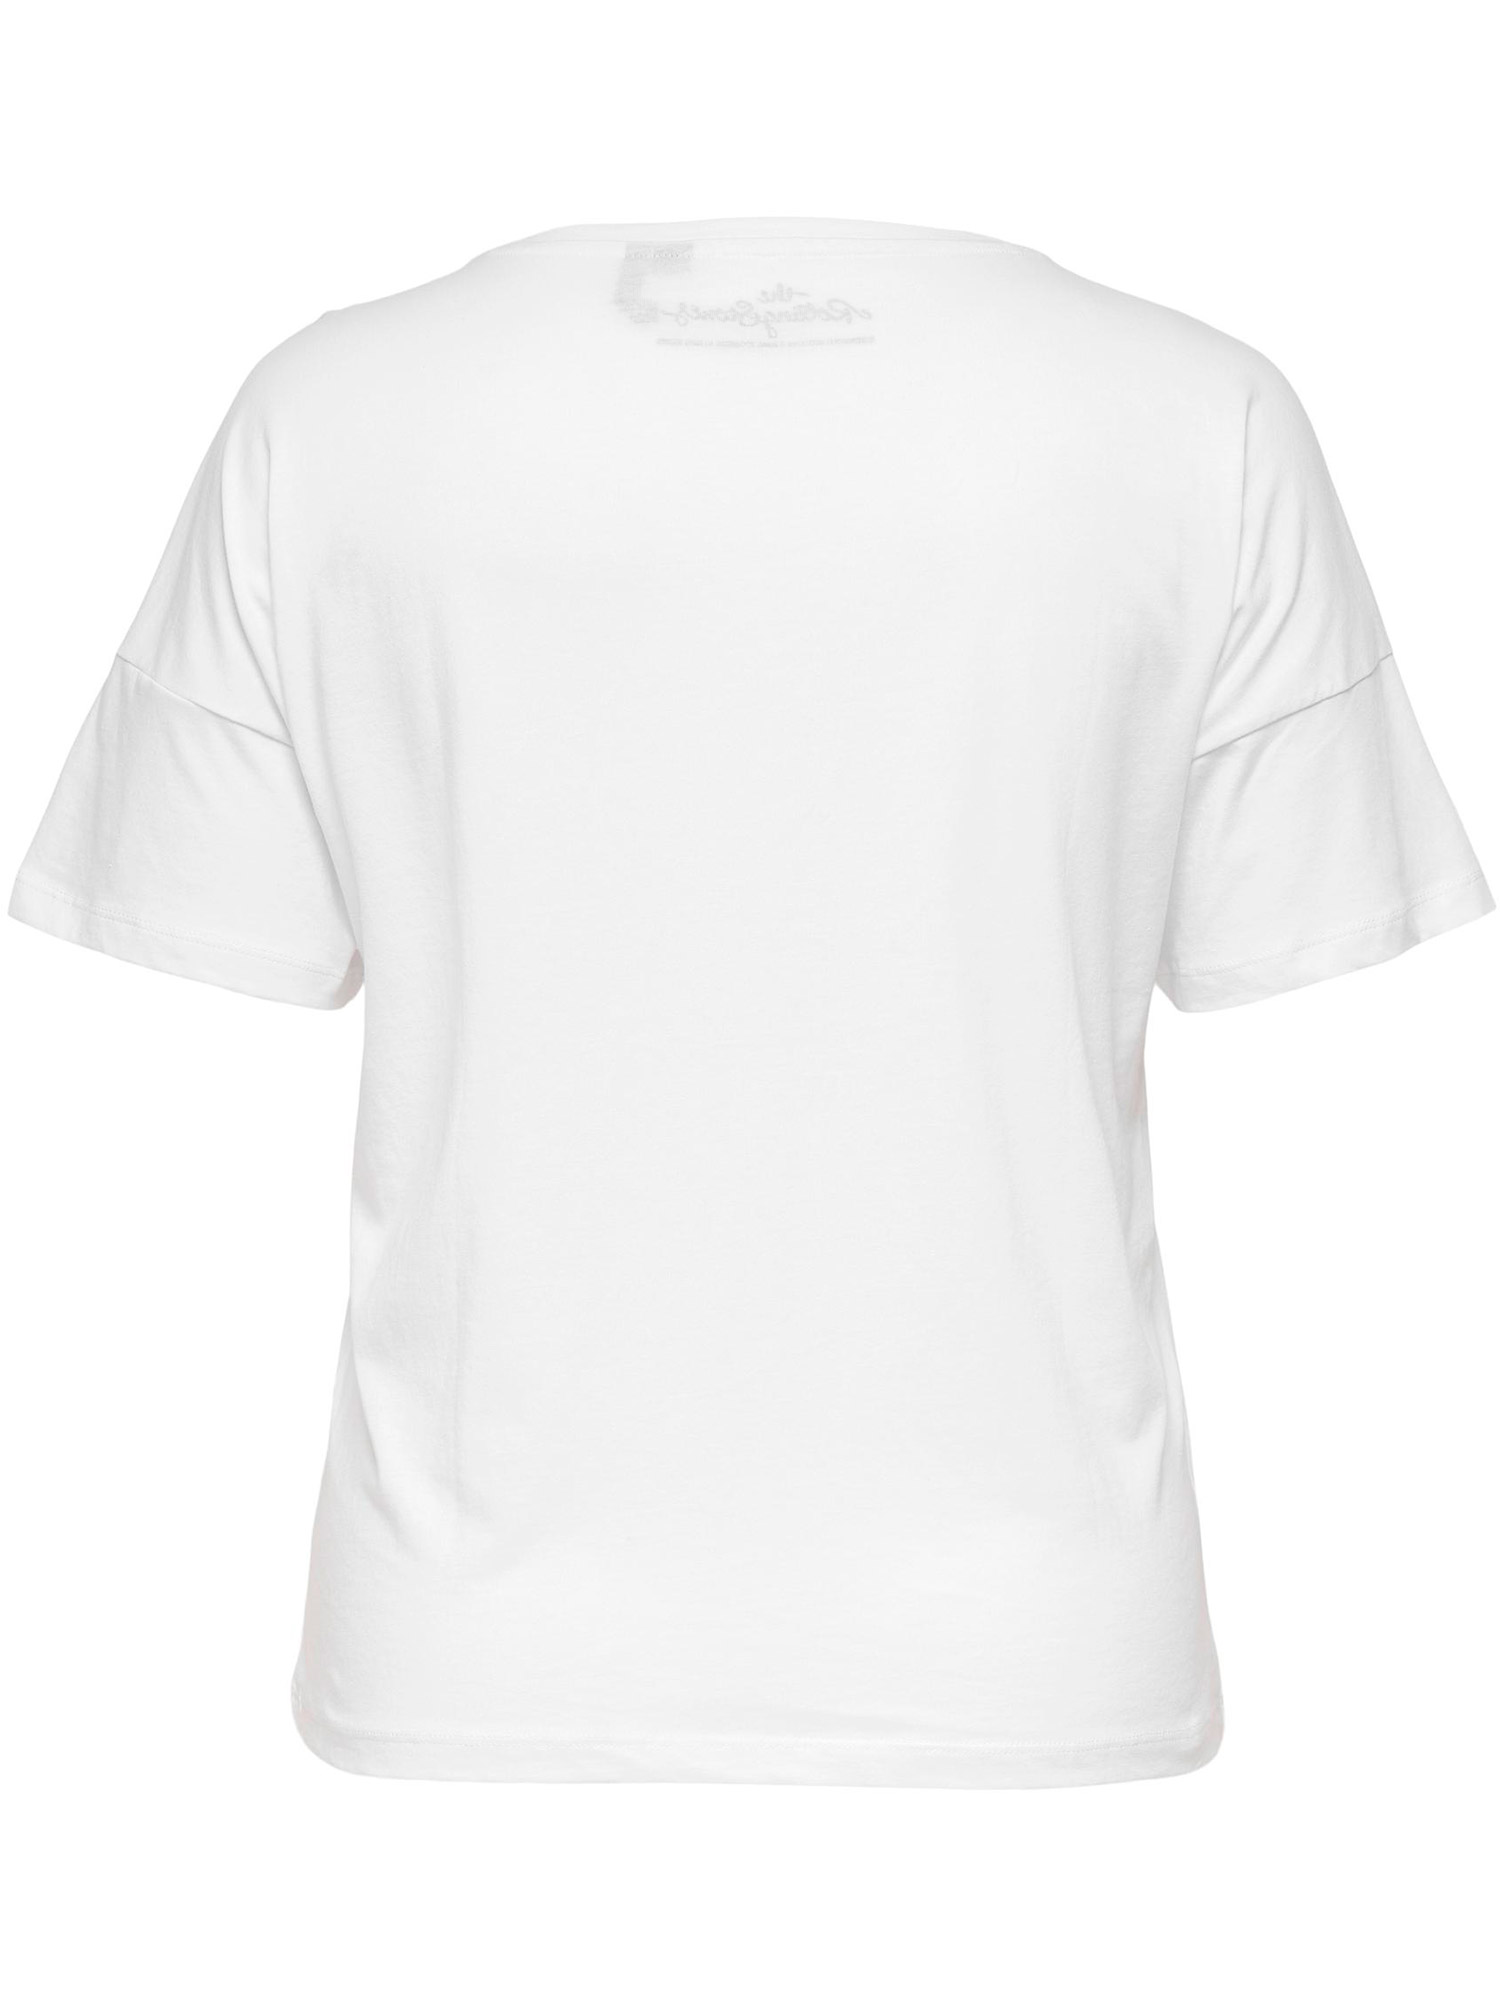 Carrolling - Hvit bomulls t-skjorte med frontprint fra Only Carmakoma